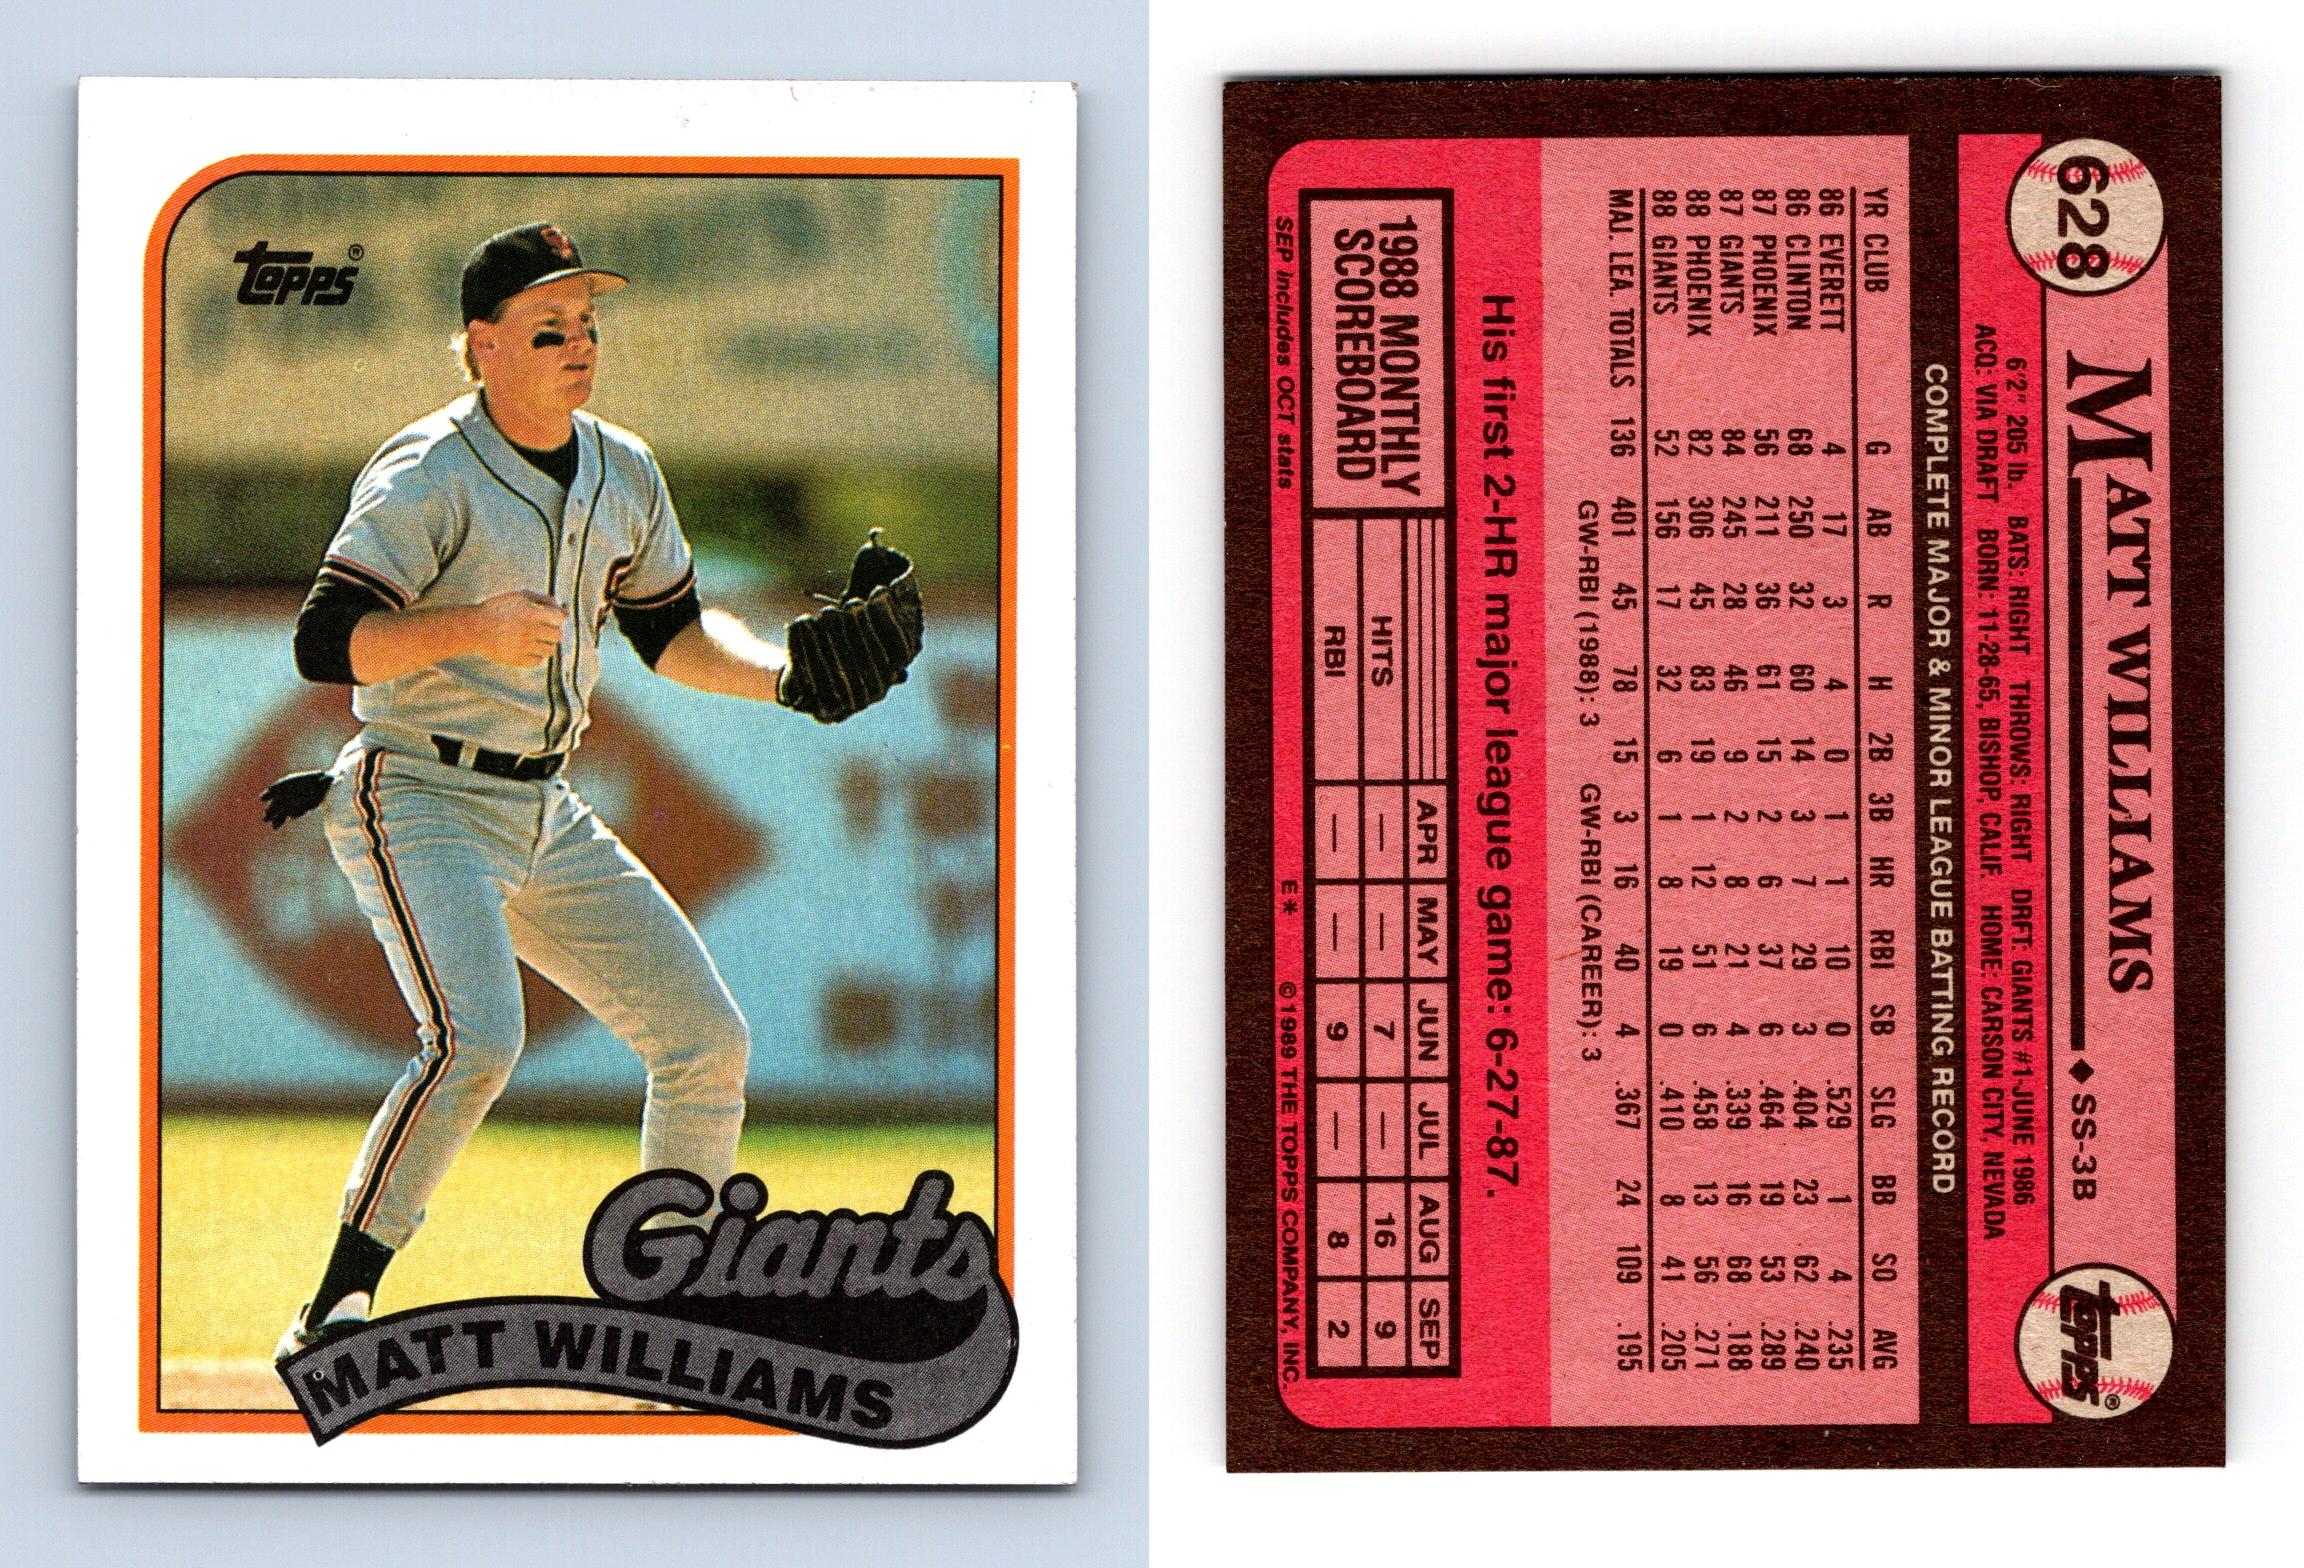 Matt Williams - Giants #628 Topps 1989 Baseball Trading Card